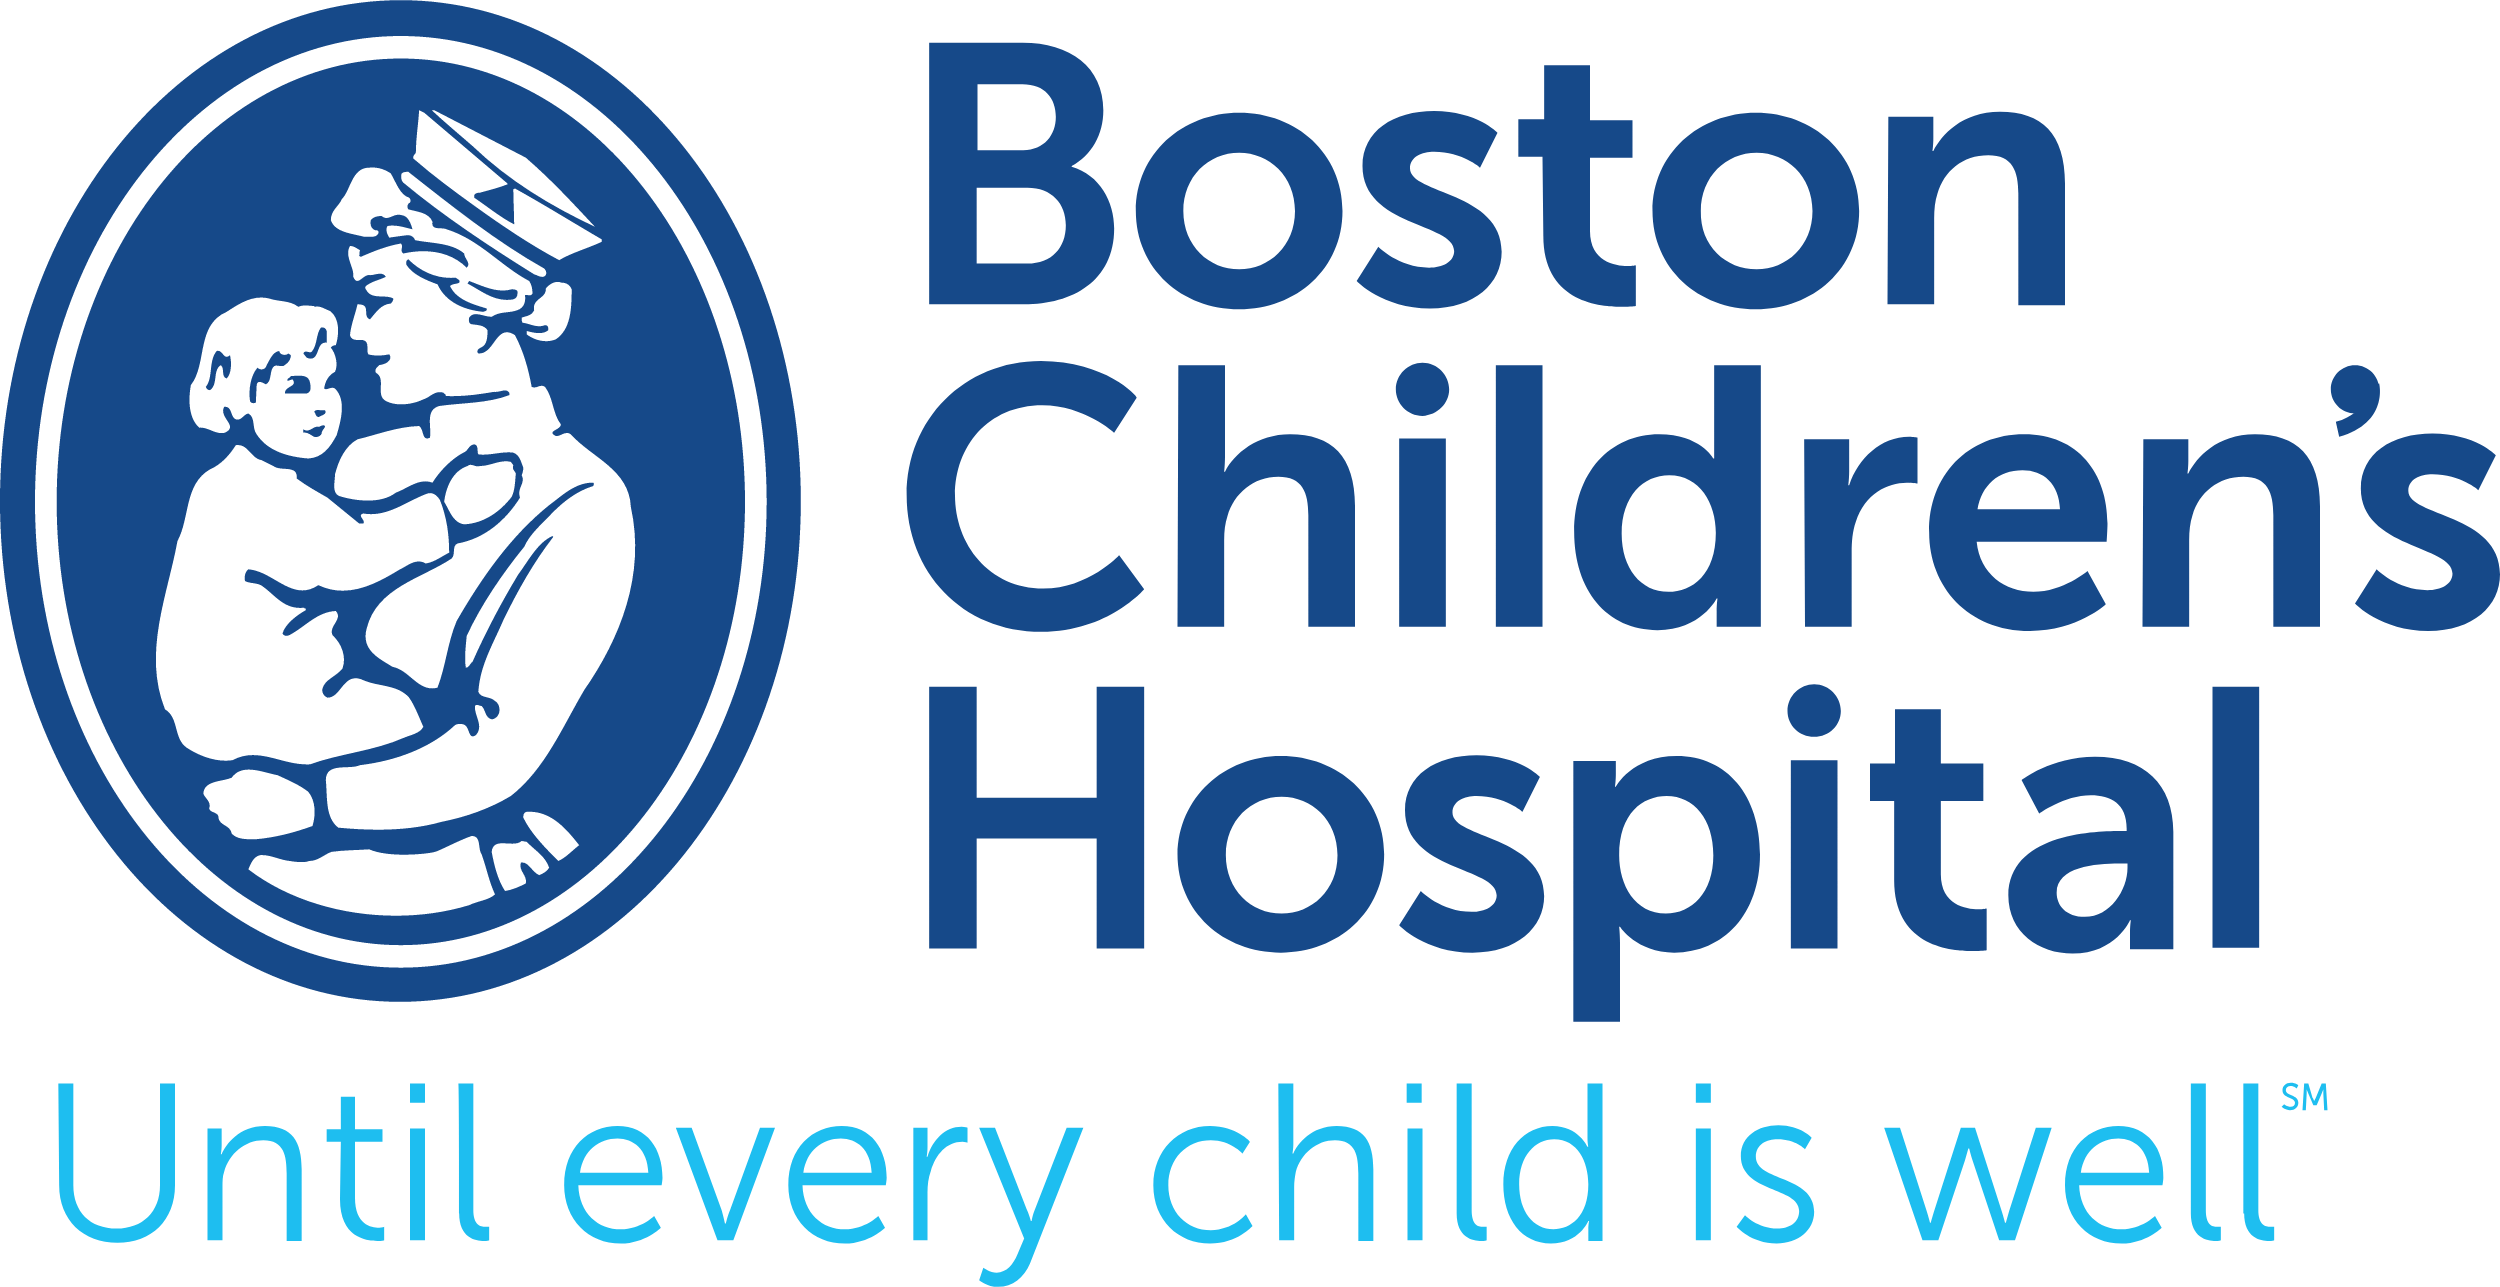 Boston_Childrens_Hospital_logo